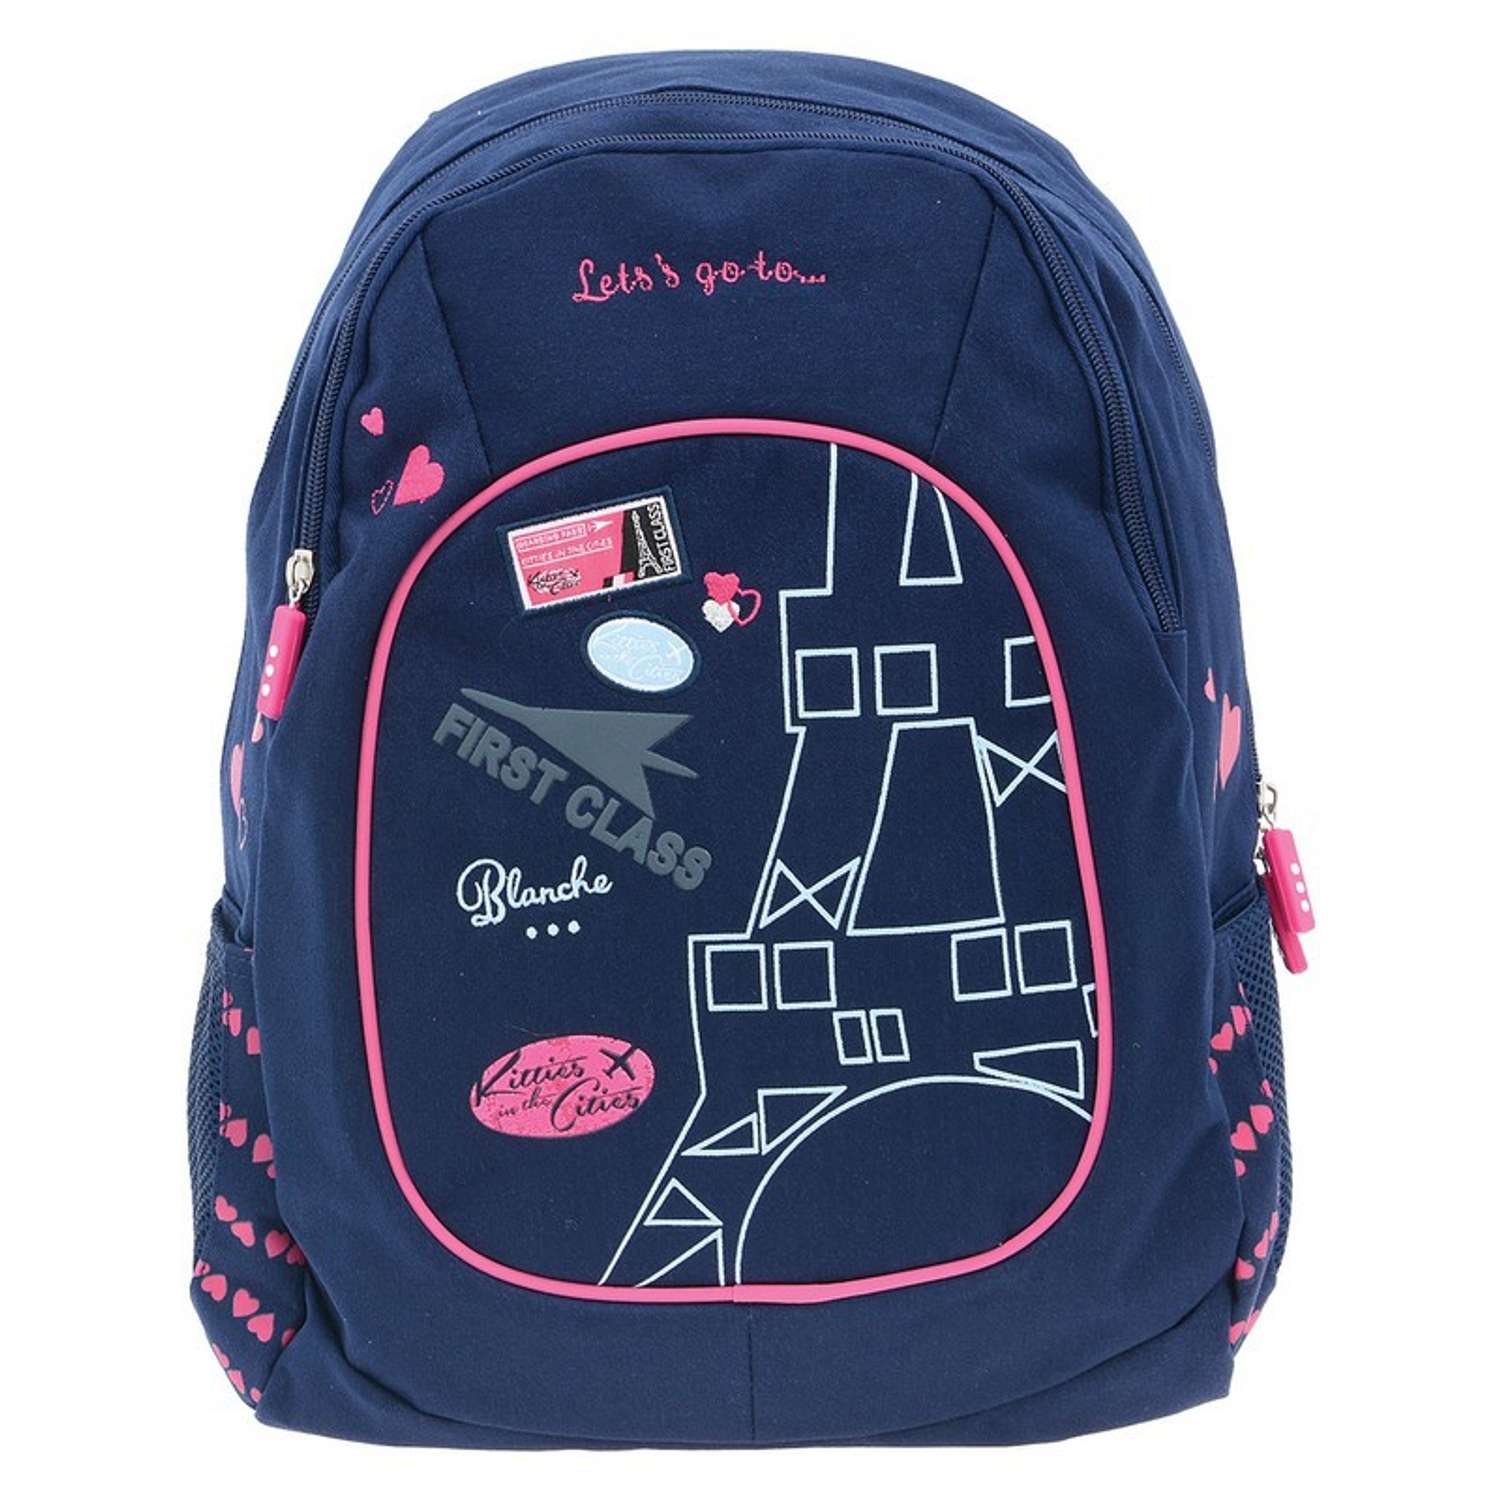 Рюкзак Proff для девочки (синий) - фото 1